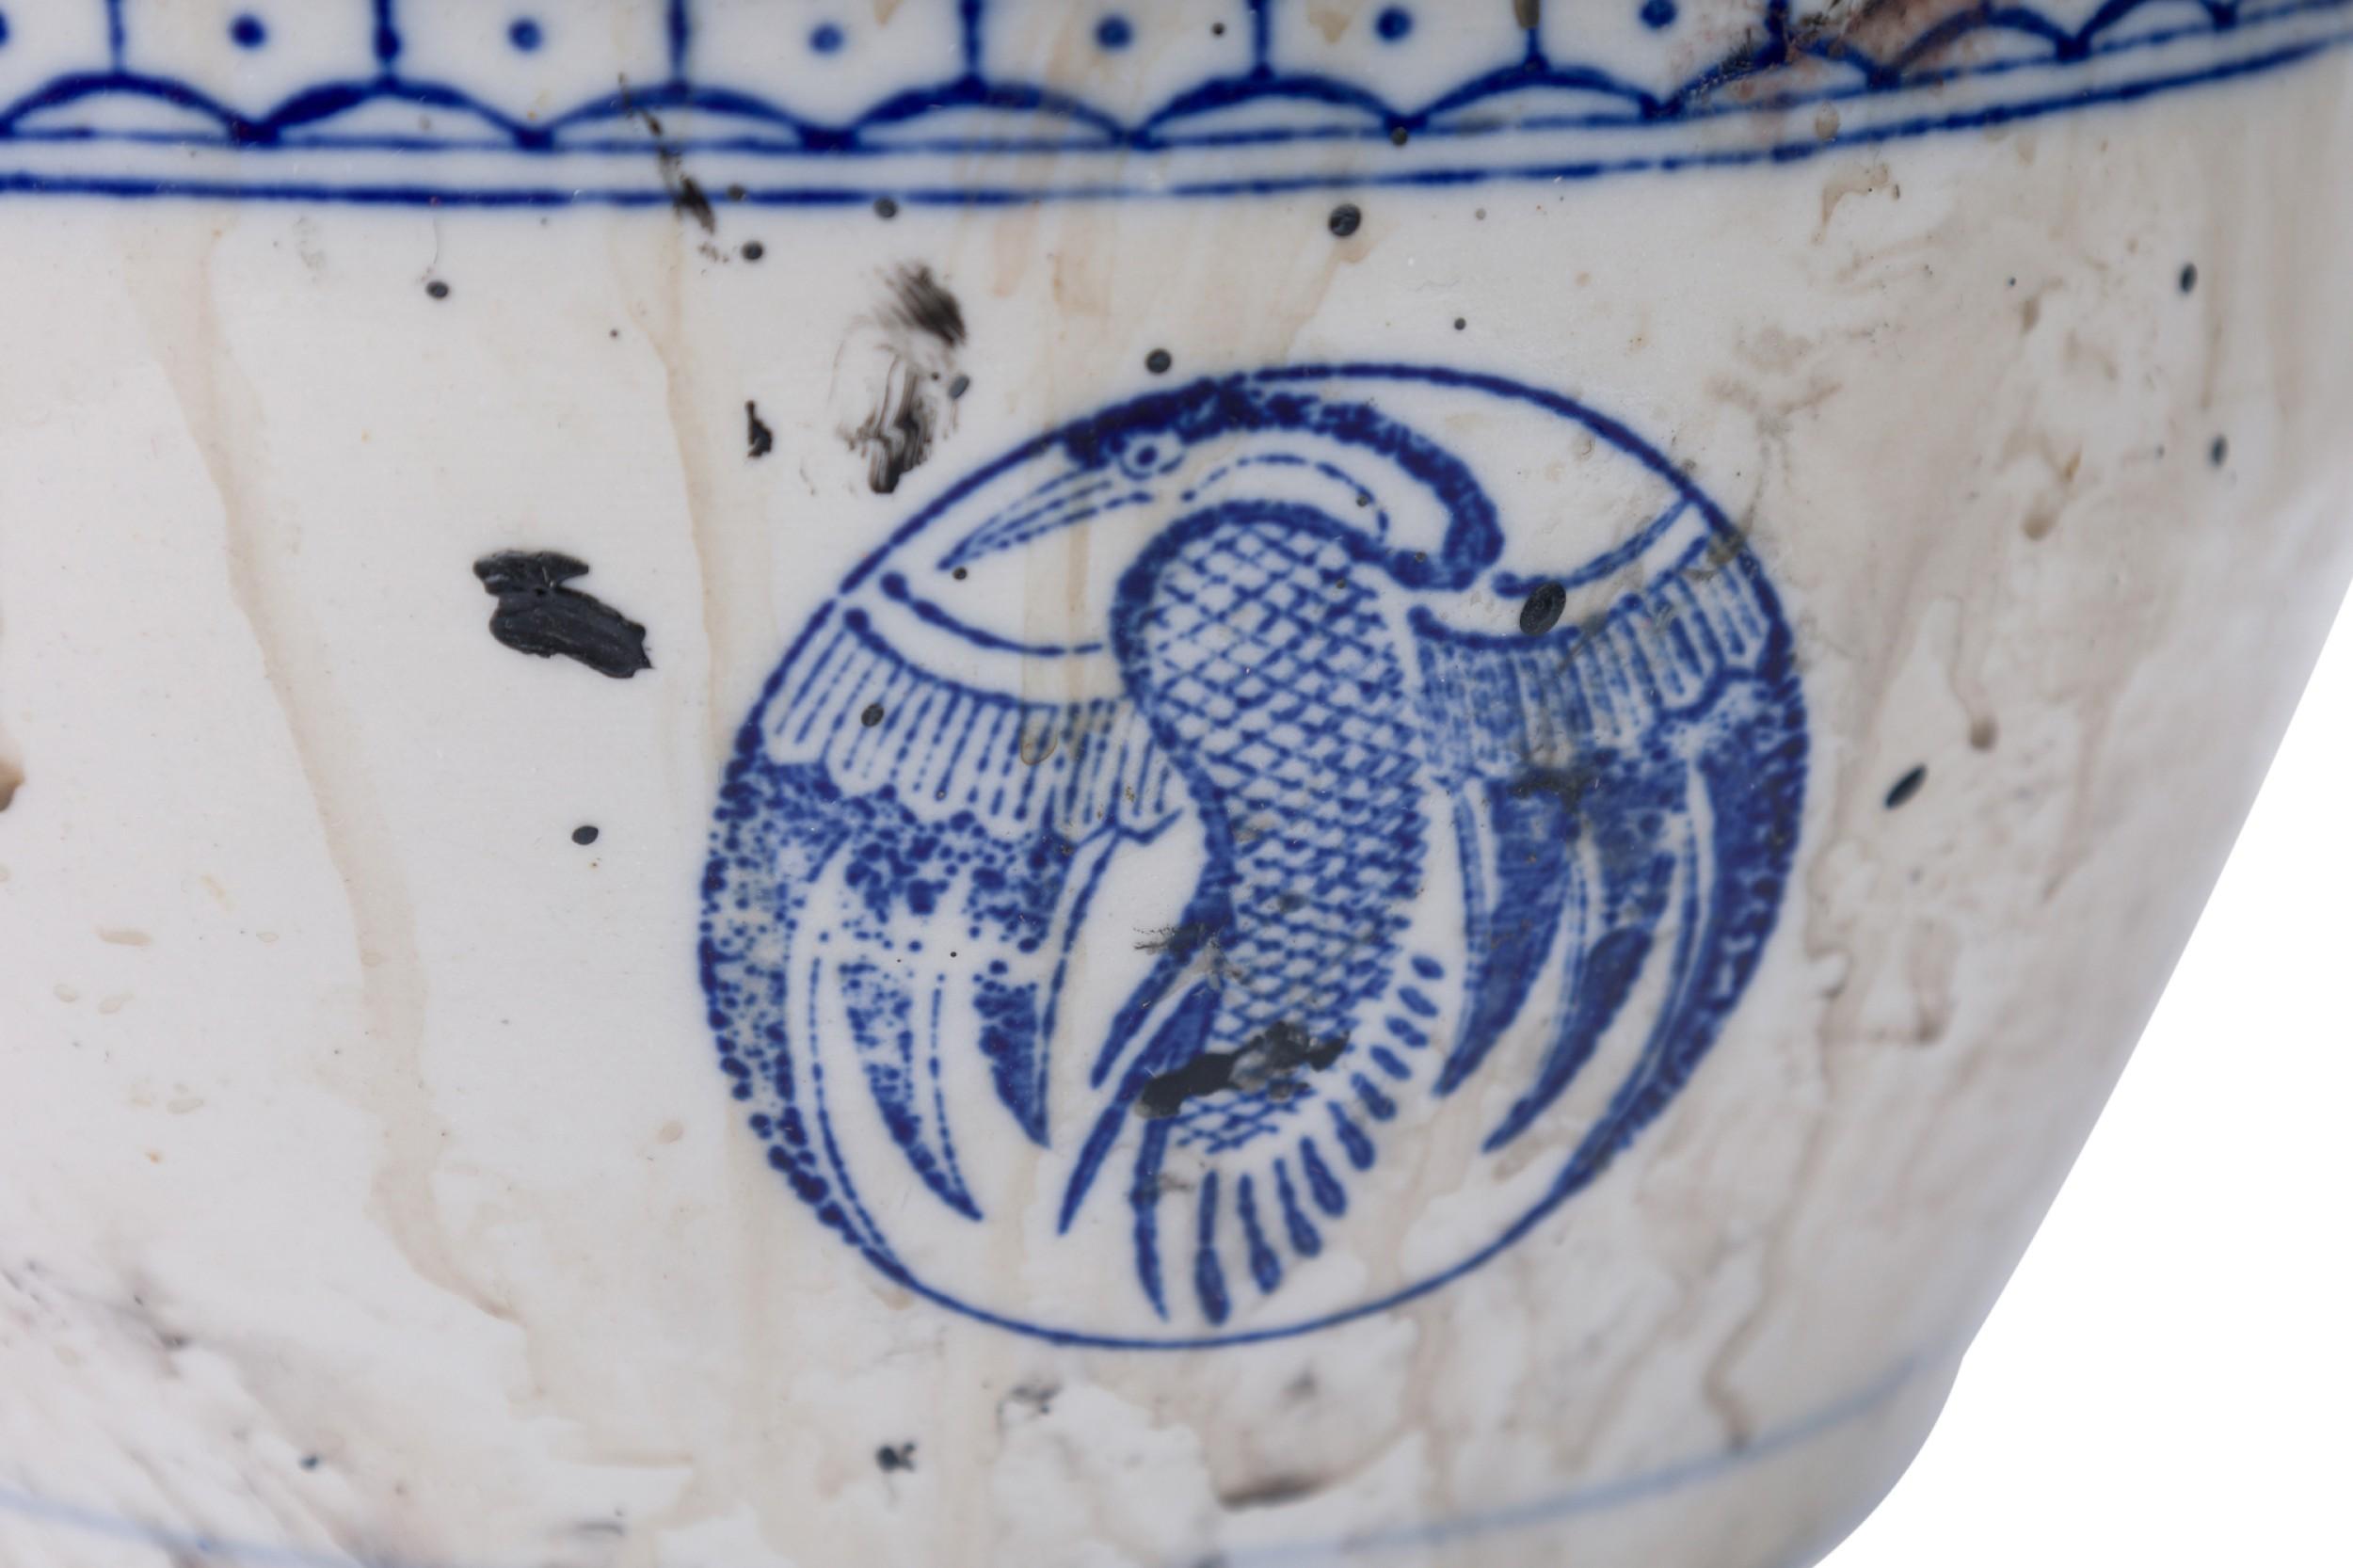 PAIRE de bols couverts en porcelaine bleue et blanche de Chine présentant des médaillons d'oiseaux peints identiques. Le plus grand bol a été cuit dans une glaçure texturée et pointillée, avec un sommet plus aplati et des médaillons plus grands. Les